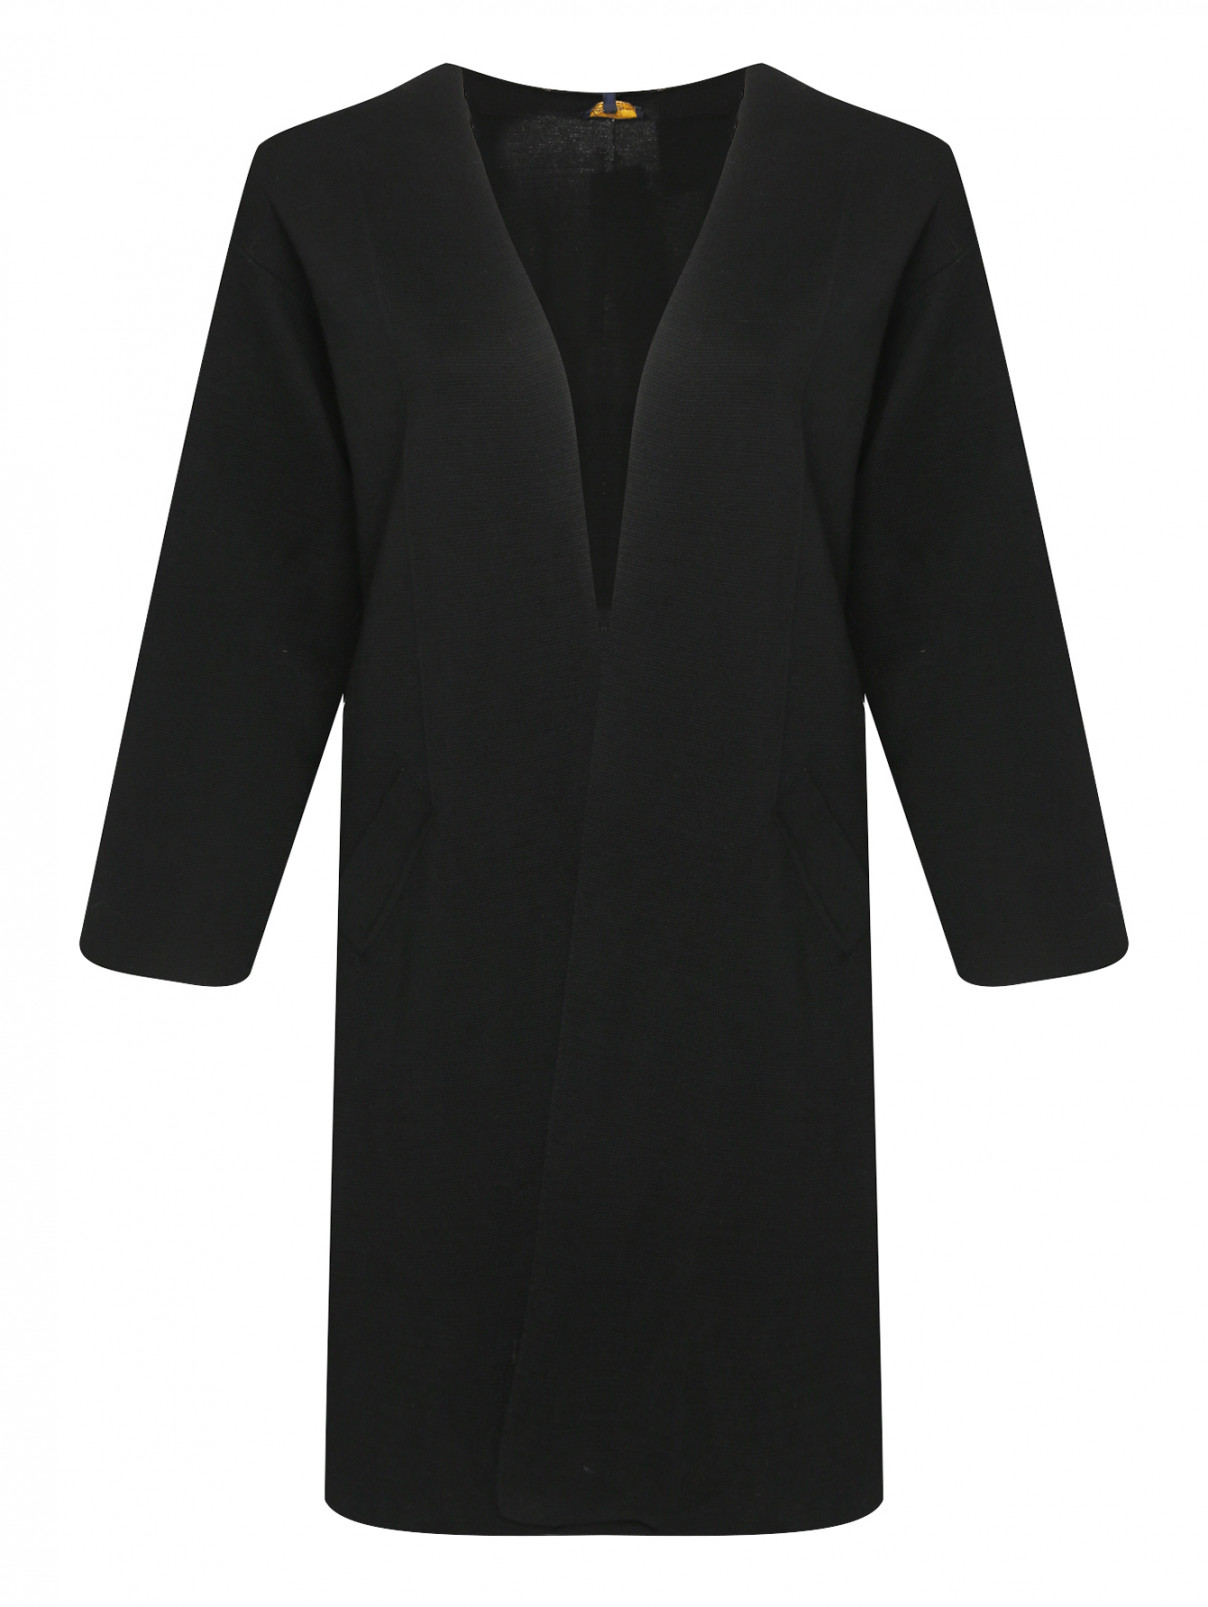 Кардиган из шерсти с карманами Luisa Spagnoli  –  Общий вид  – Цвет:  Черный